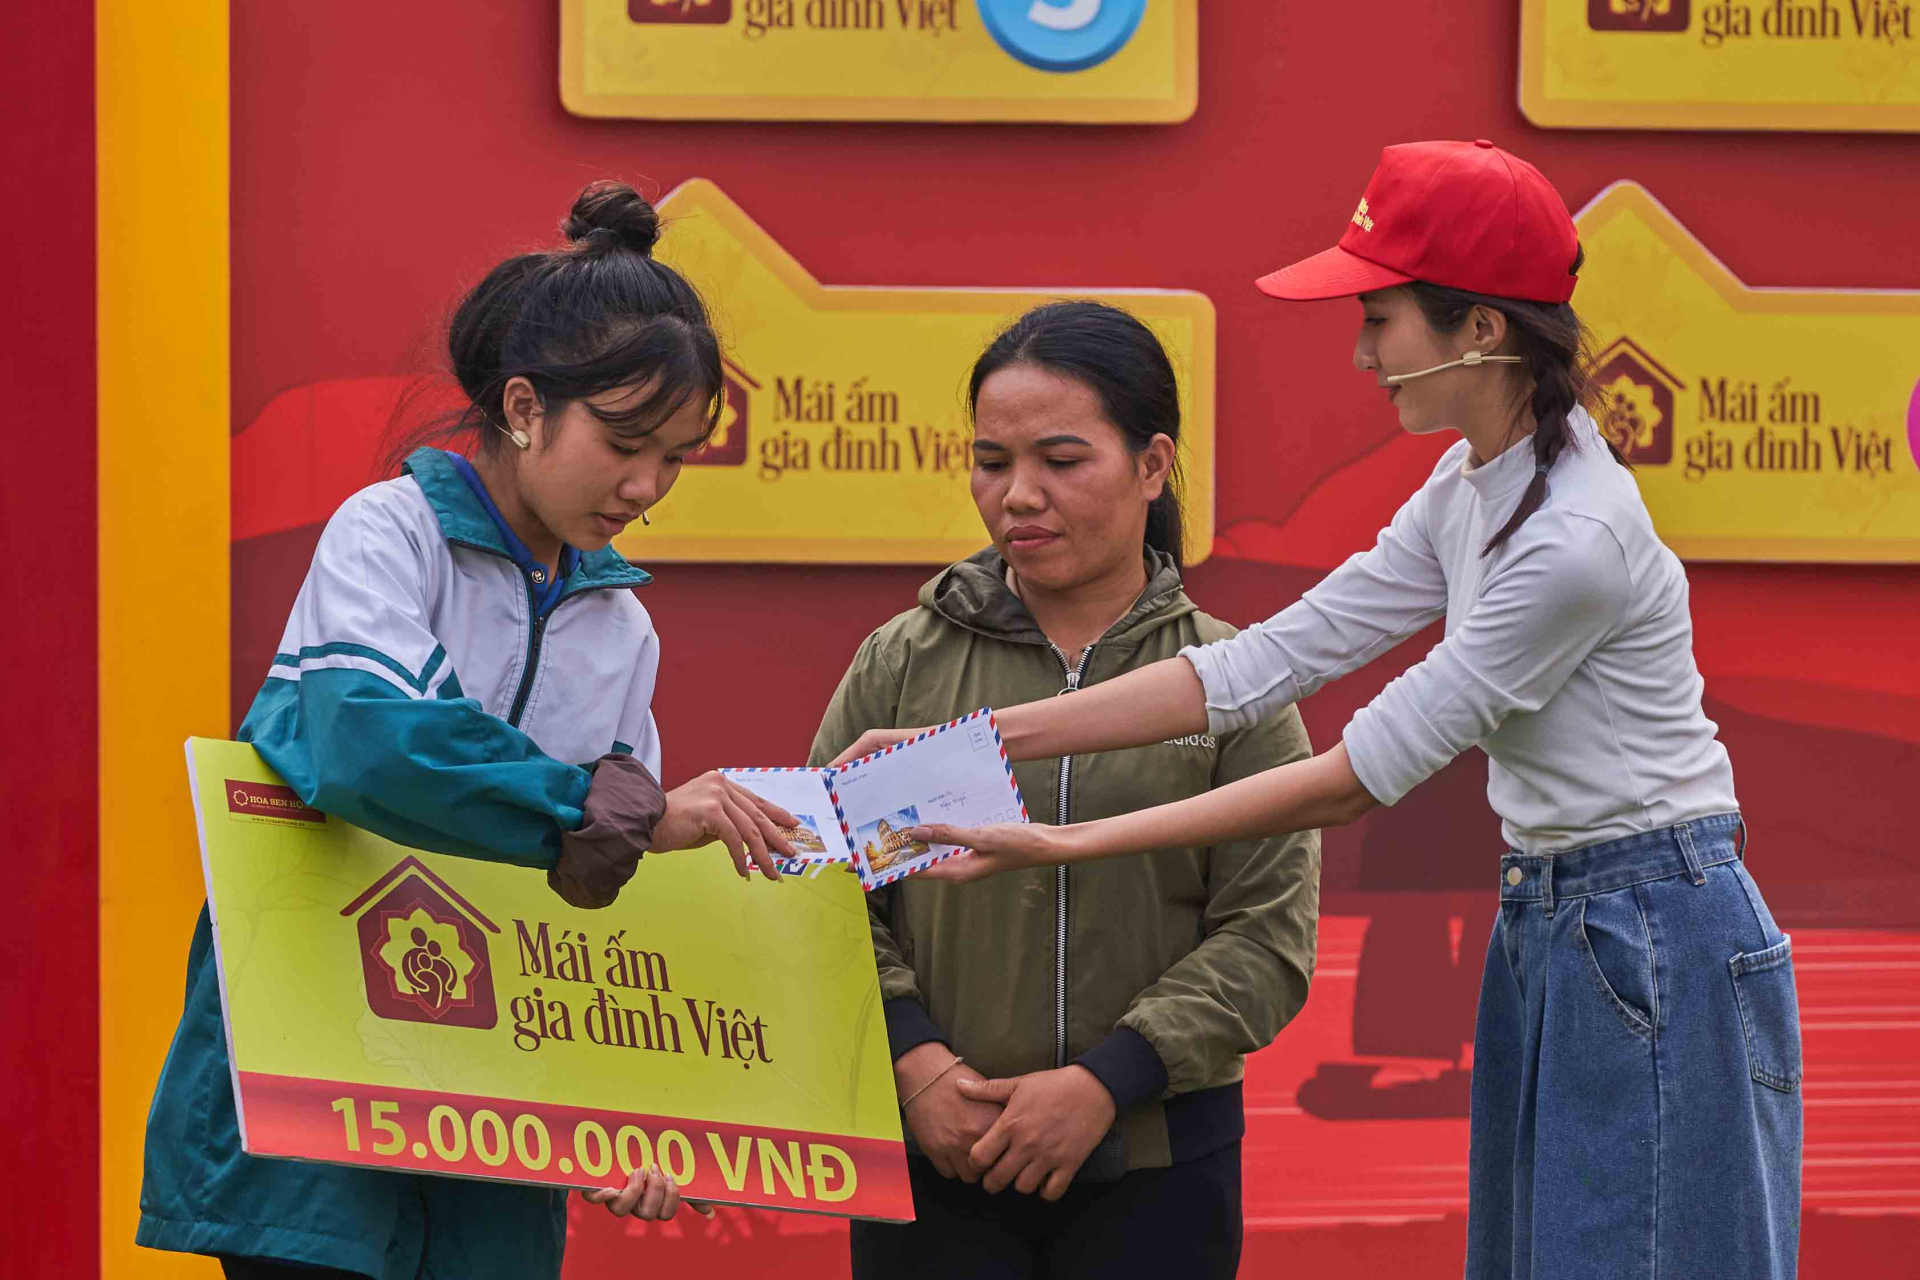 Diễn viên Đỗ Duy Nam và diễn viên Ngọc Huyền góp sức mang về giải thưởng 105 triệu cho trẻ em mồ côi - ảnh 6